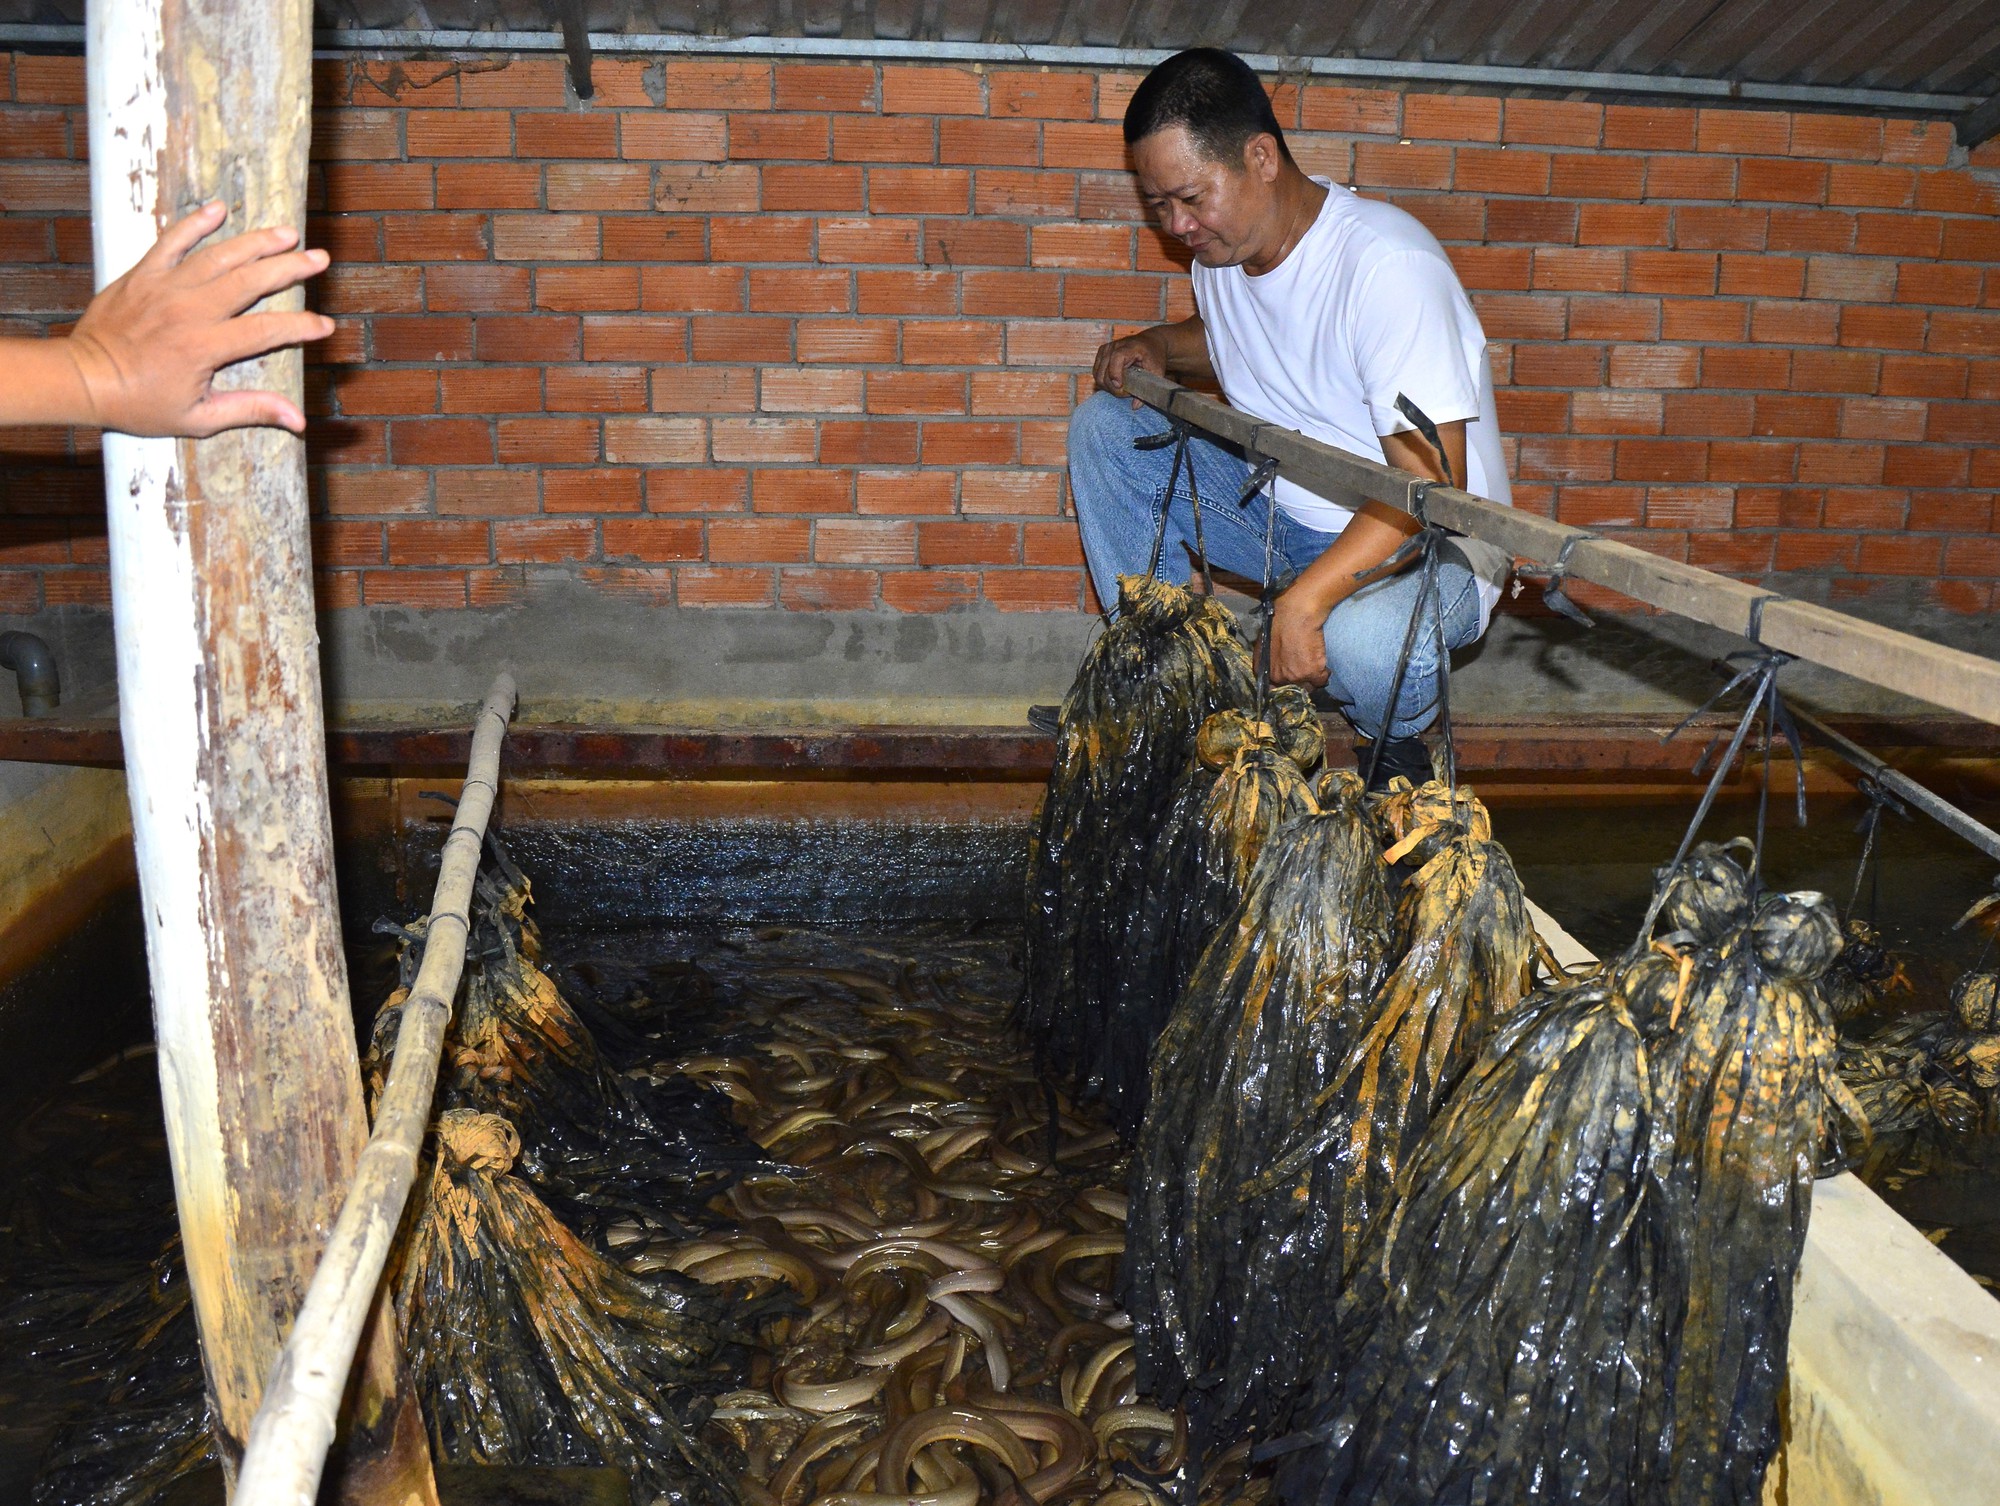 Phục lăn ông nông dân Kiên Giang nuôi lươn dày đặc khiến cả làng đều thích